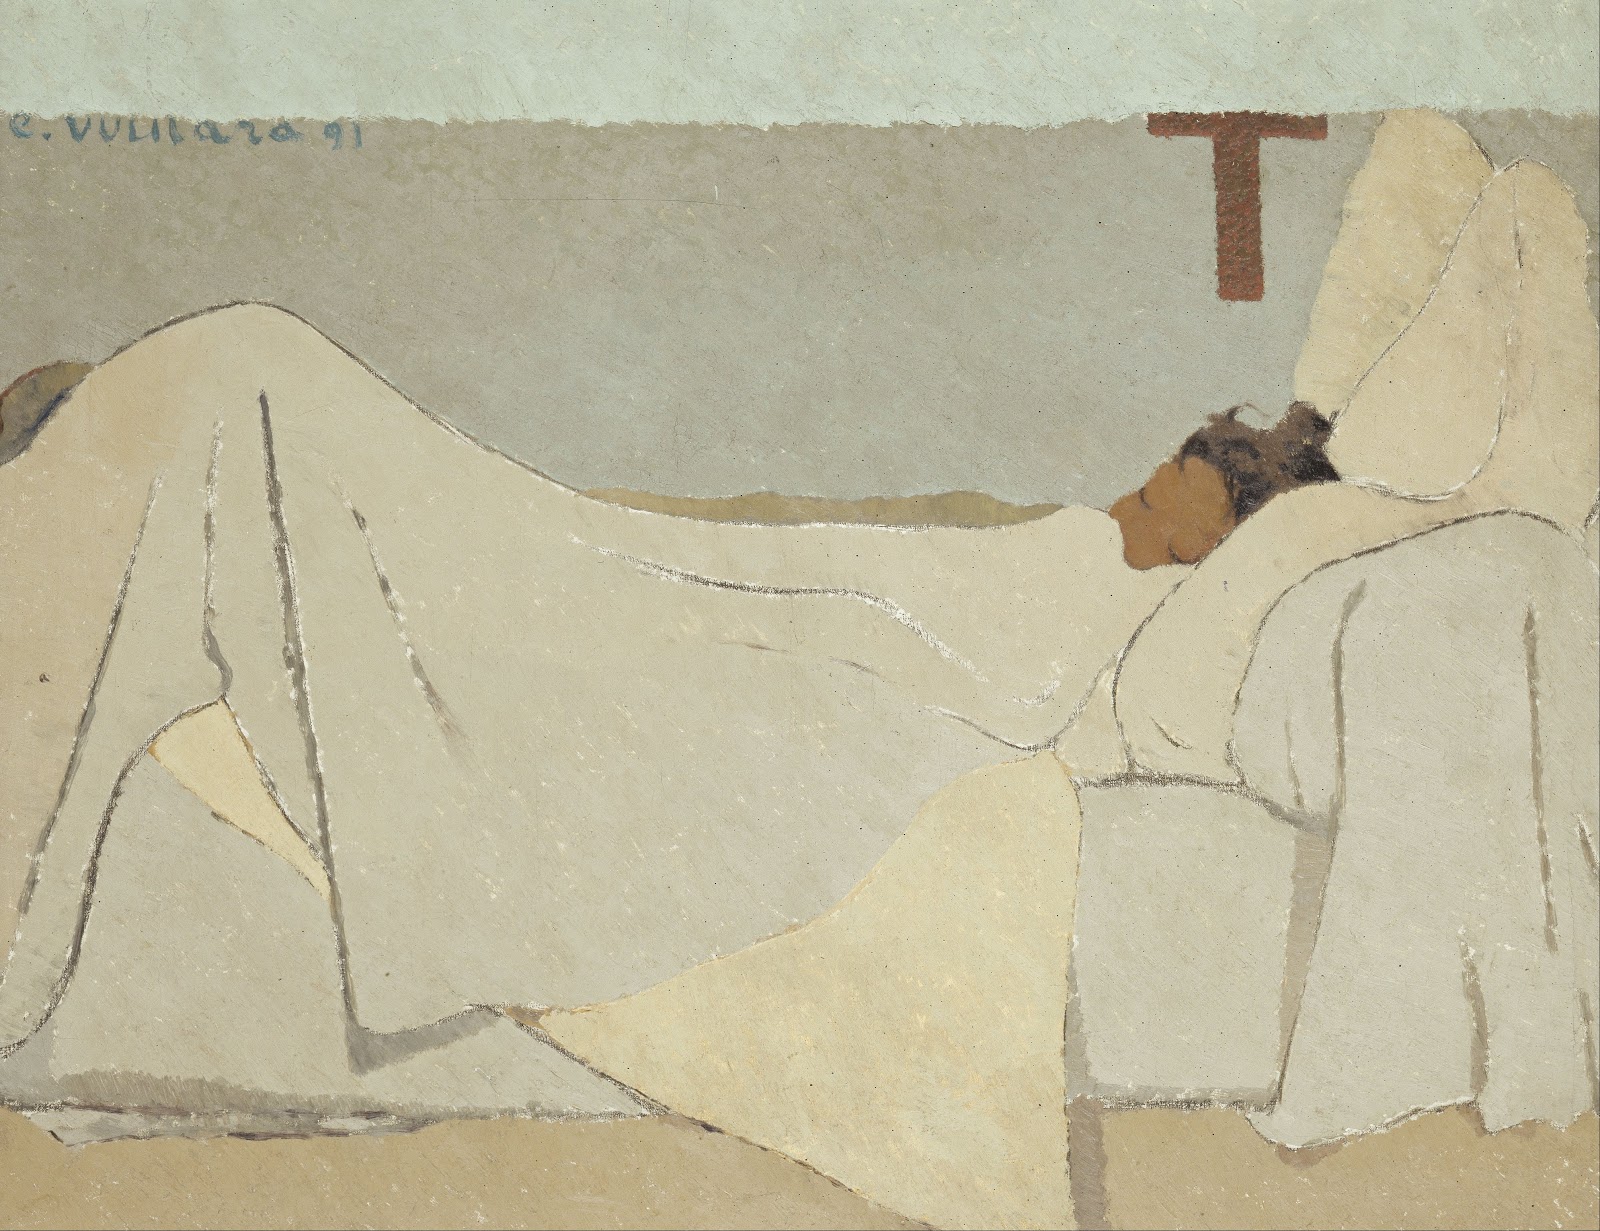 Edouard+Vuillard-1868-1940 (10).jpg